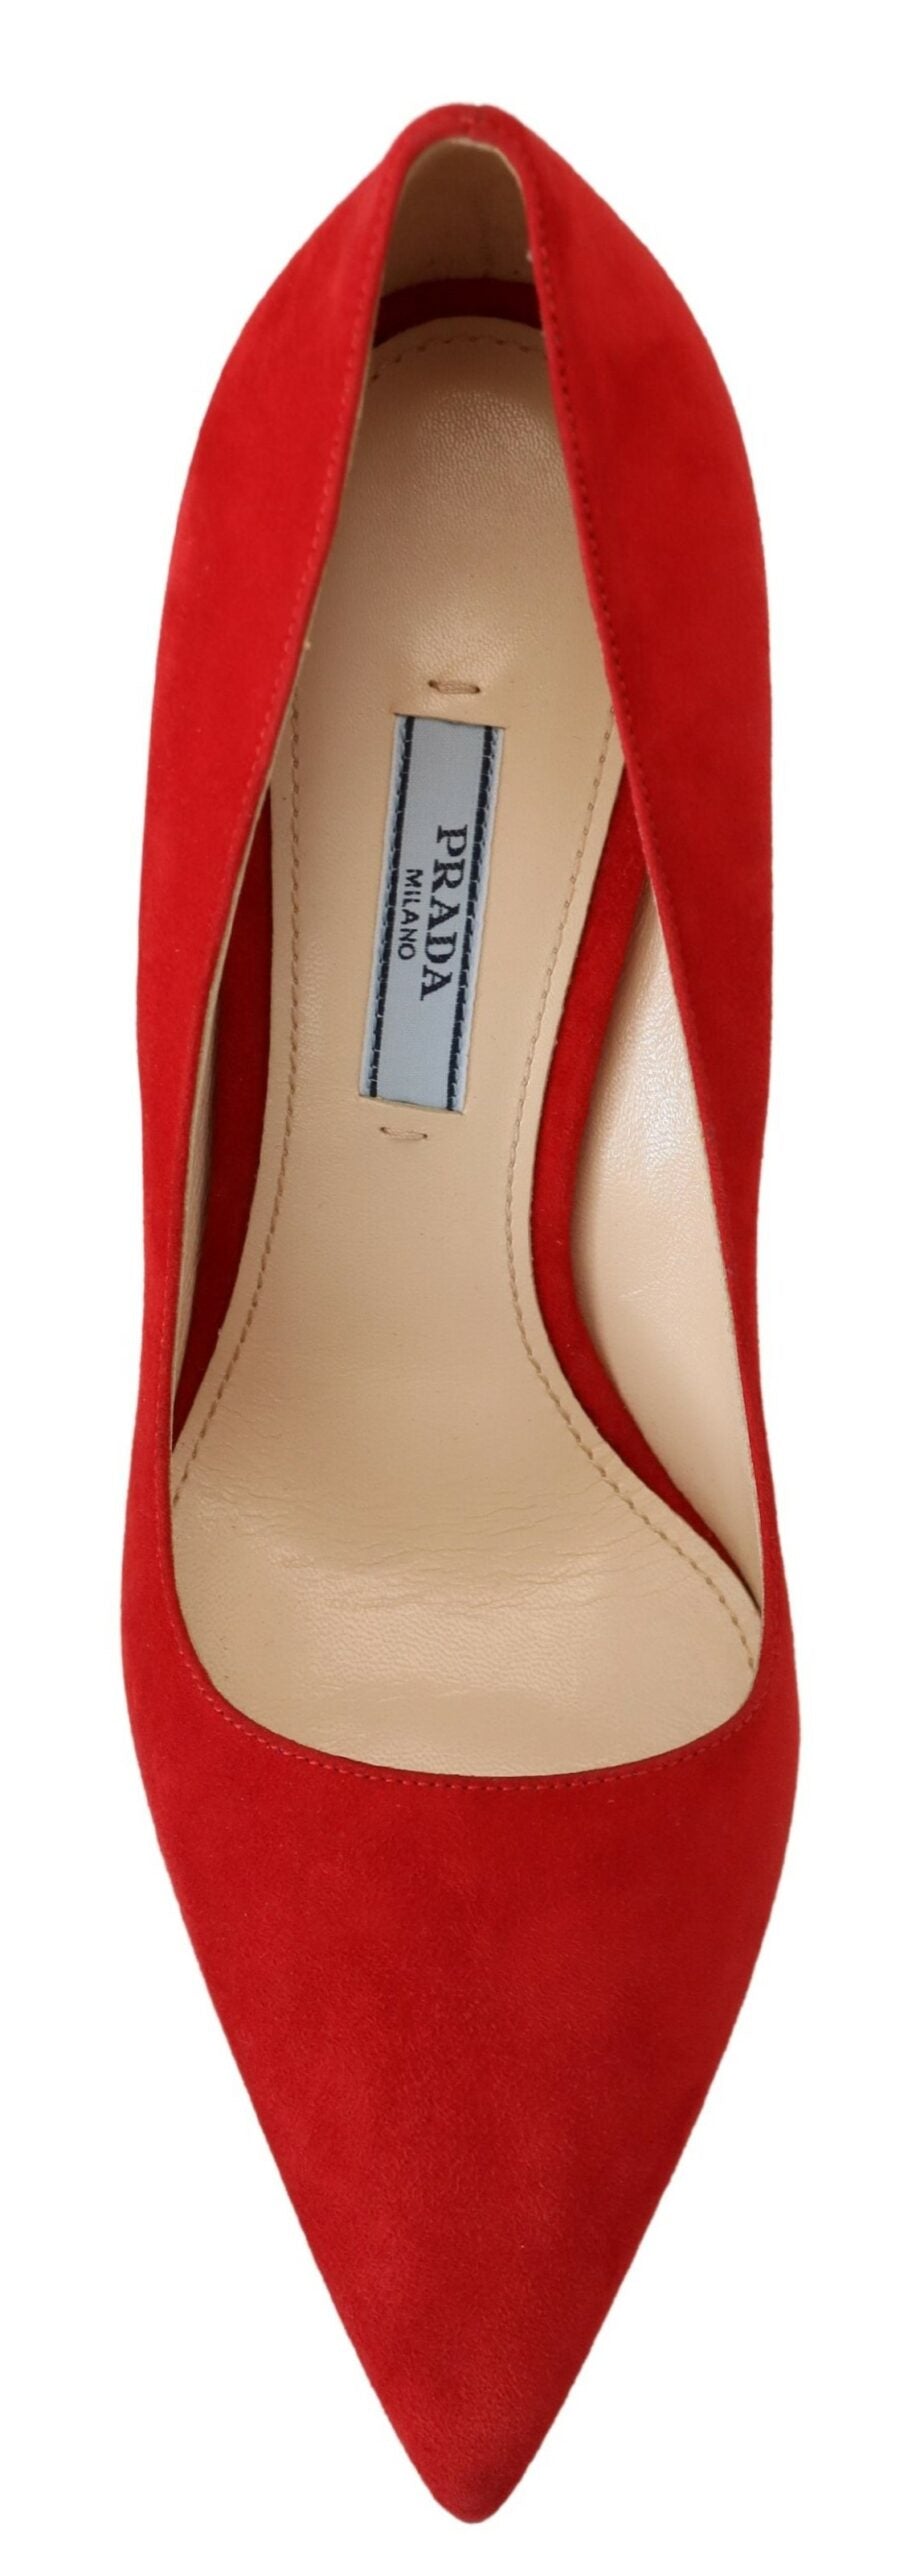 Red Suede Heels - Elegance Meets Comfort